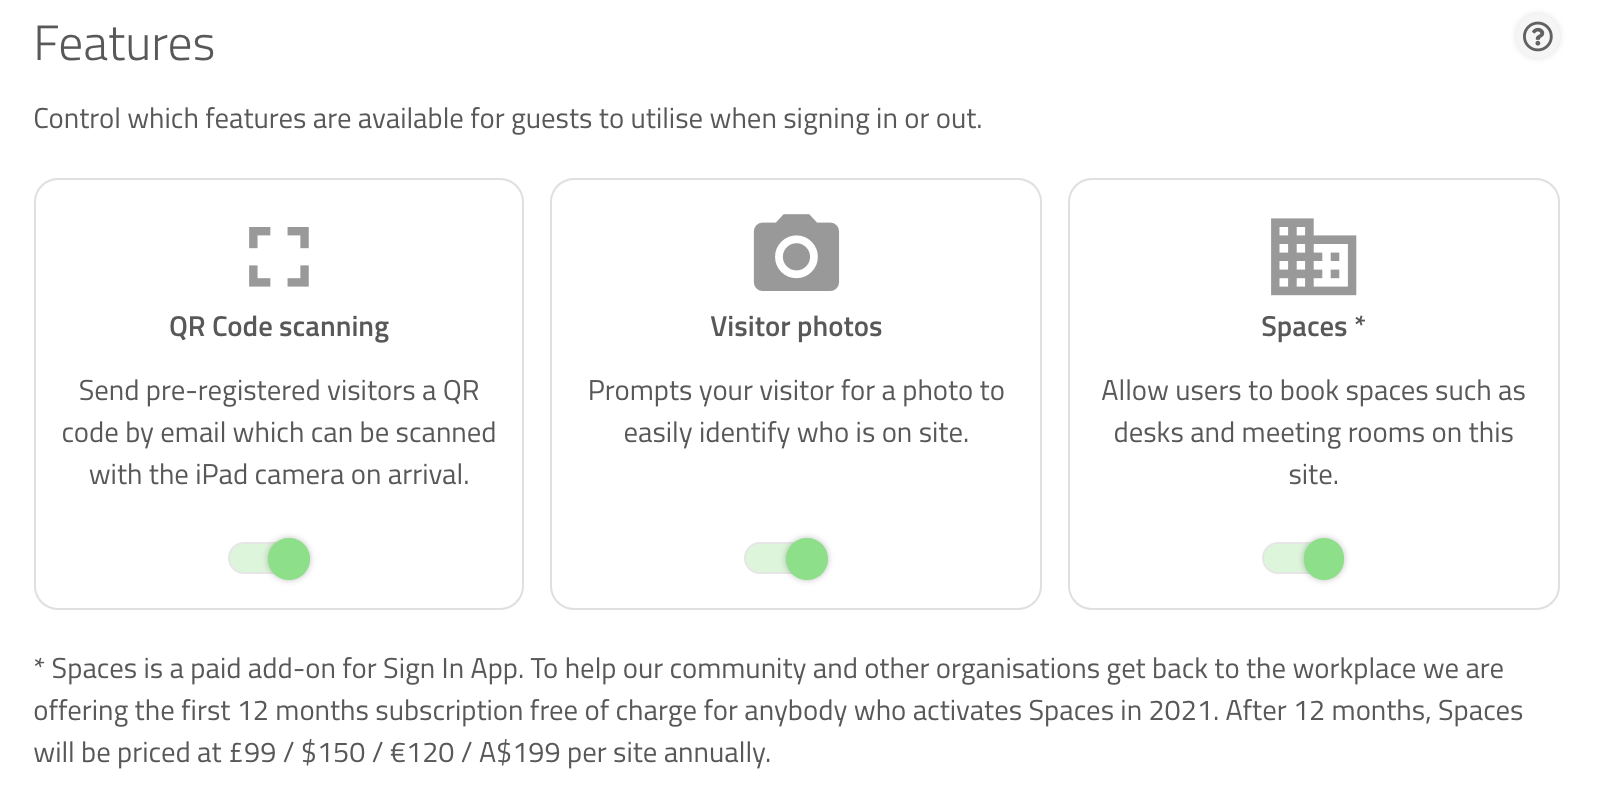 Captura de pantalla de las características del sitio en el portal de Sign In App